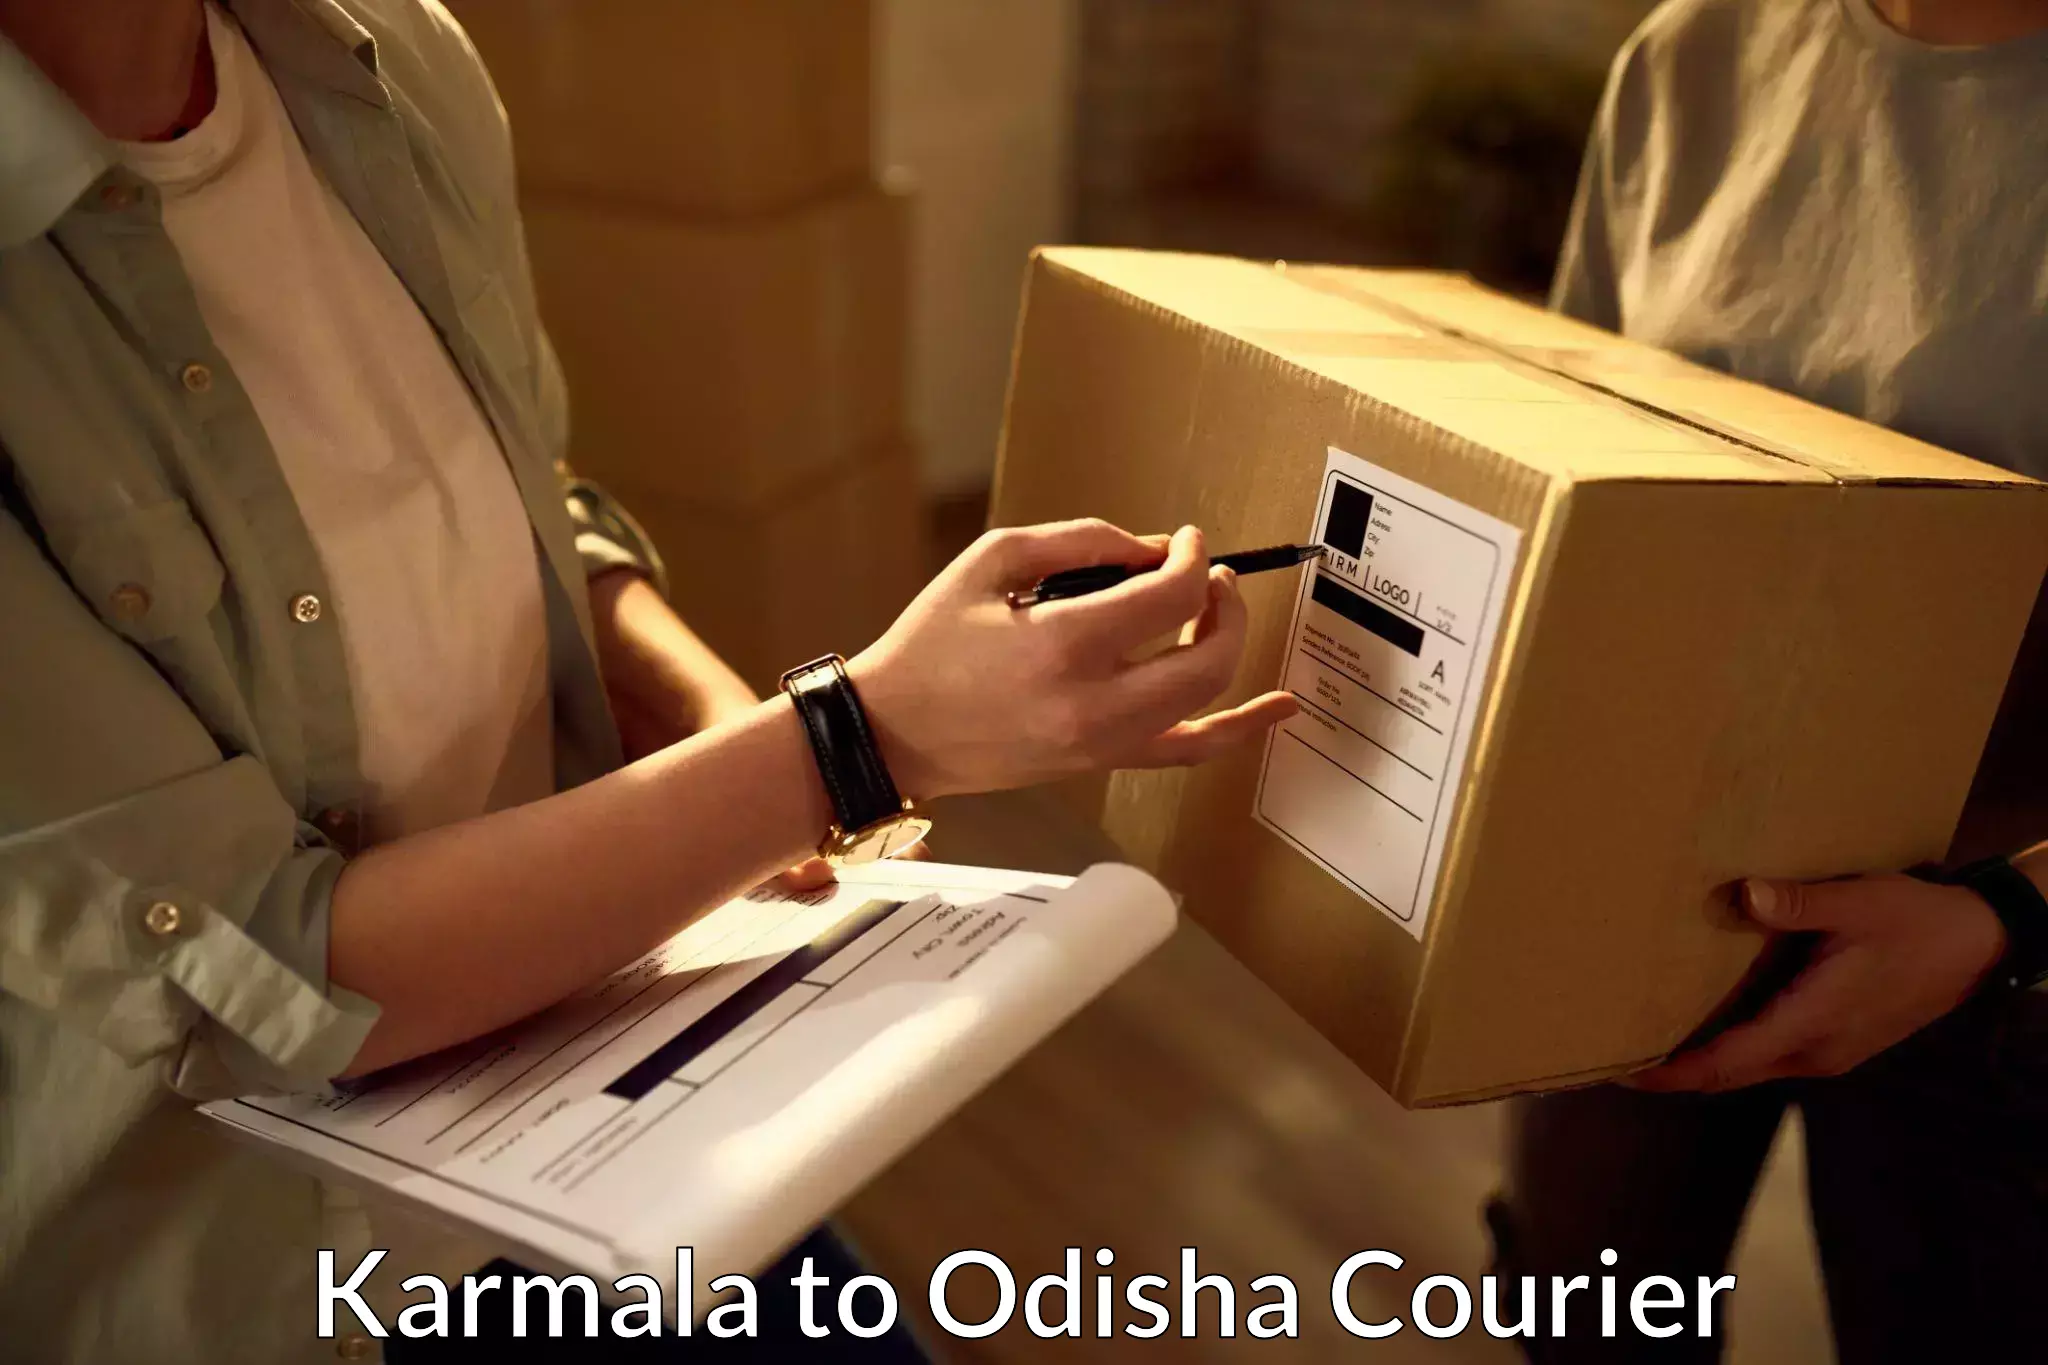 Large package courier Karmala to Ukhunda